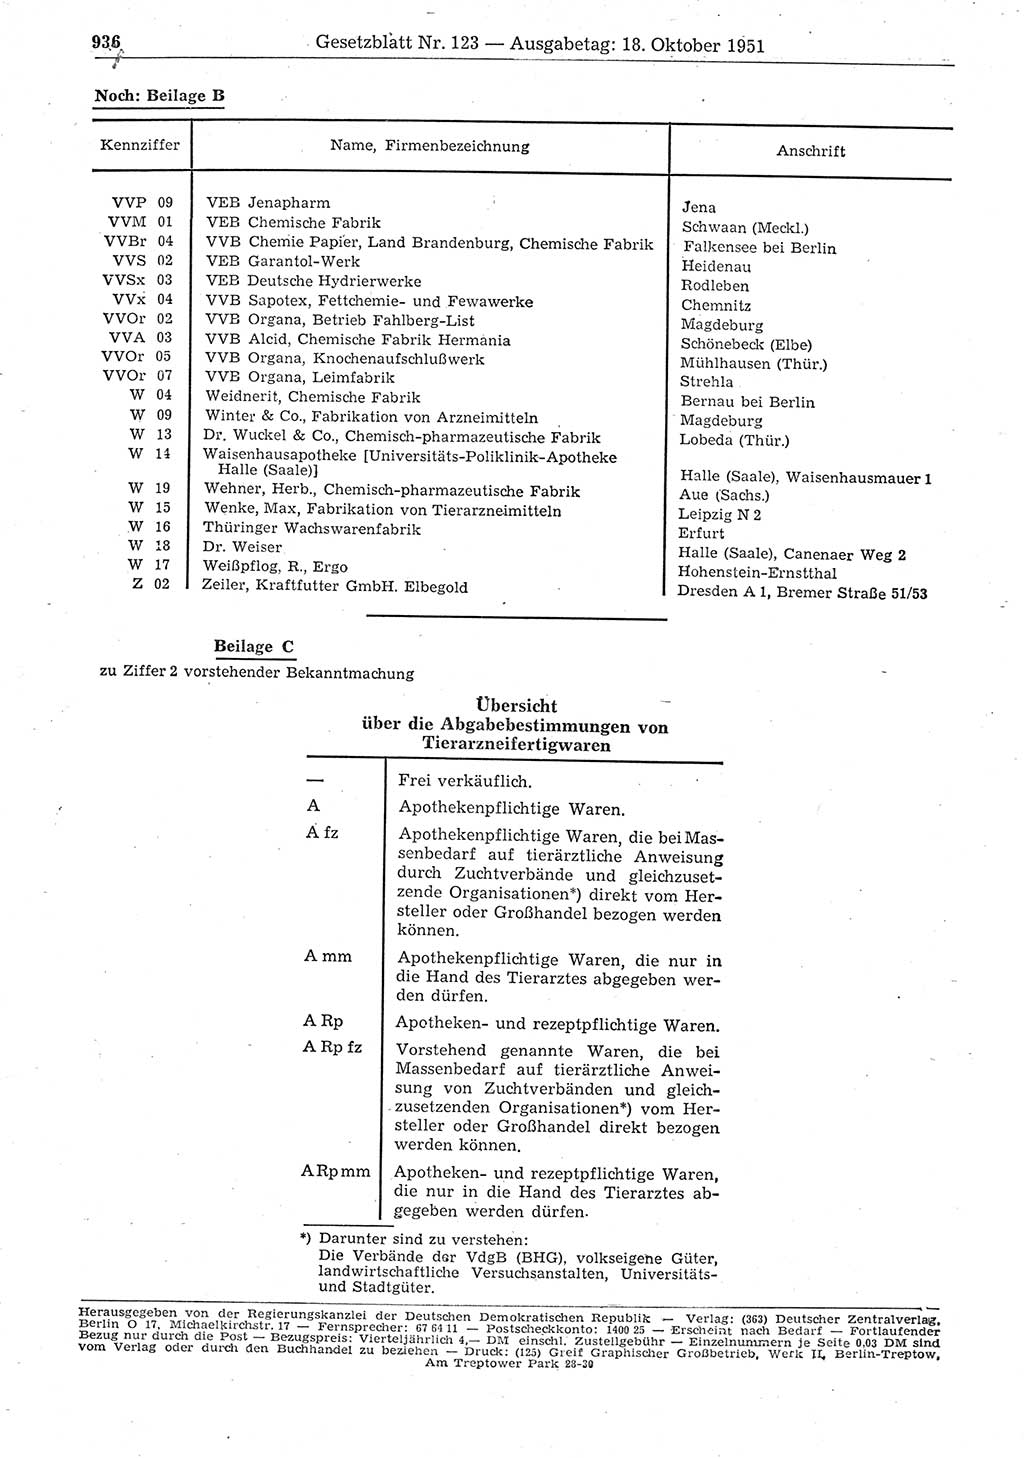 Gesetzblatt (GBl.) der Deutschen Demokratischen Republik (DDR) 1951, Seite 936 (GBl. DDR 1951, S. 936)